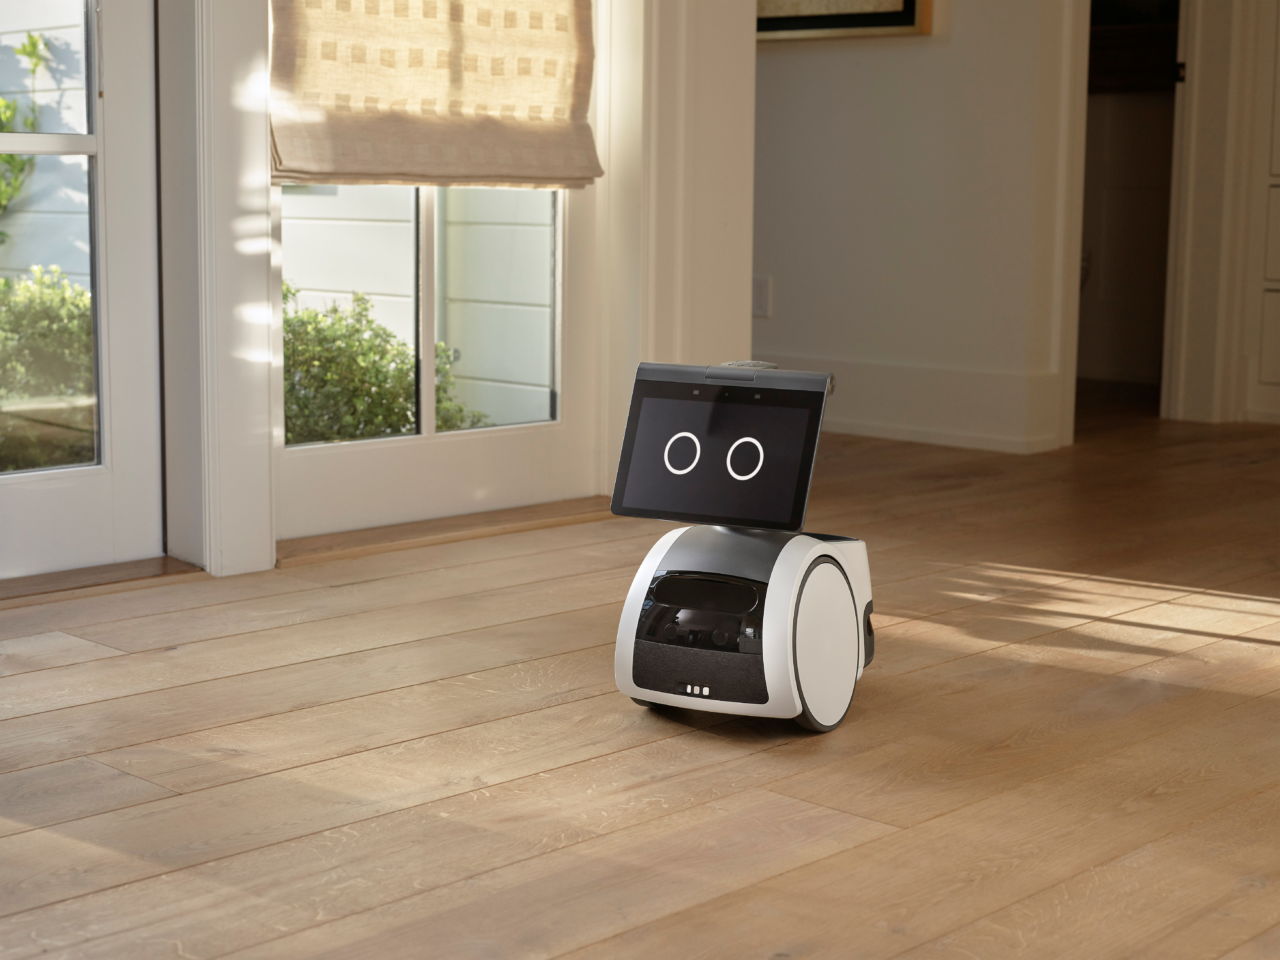 アマゾン・ドット・コムの家庭用小型ロボット「アストロ」